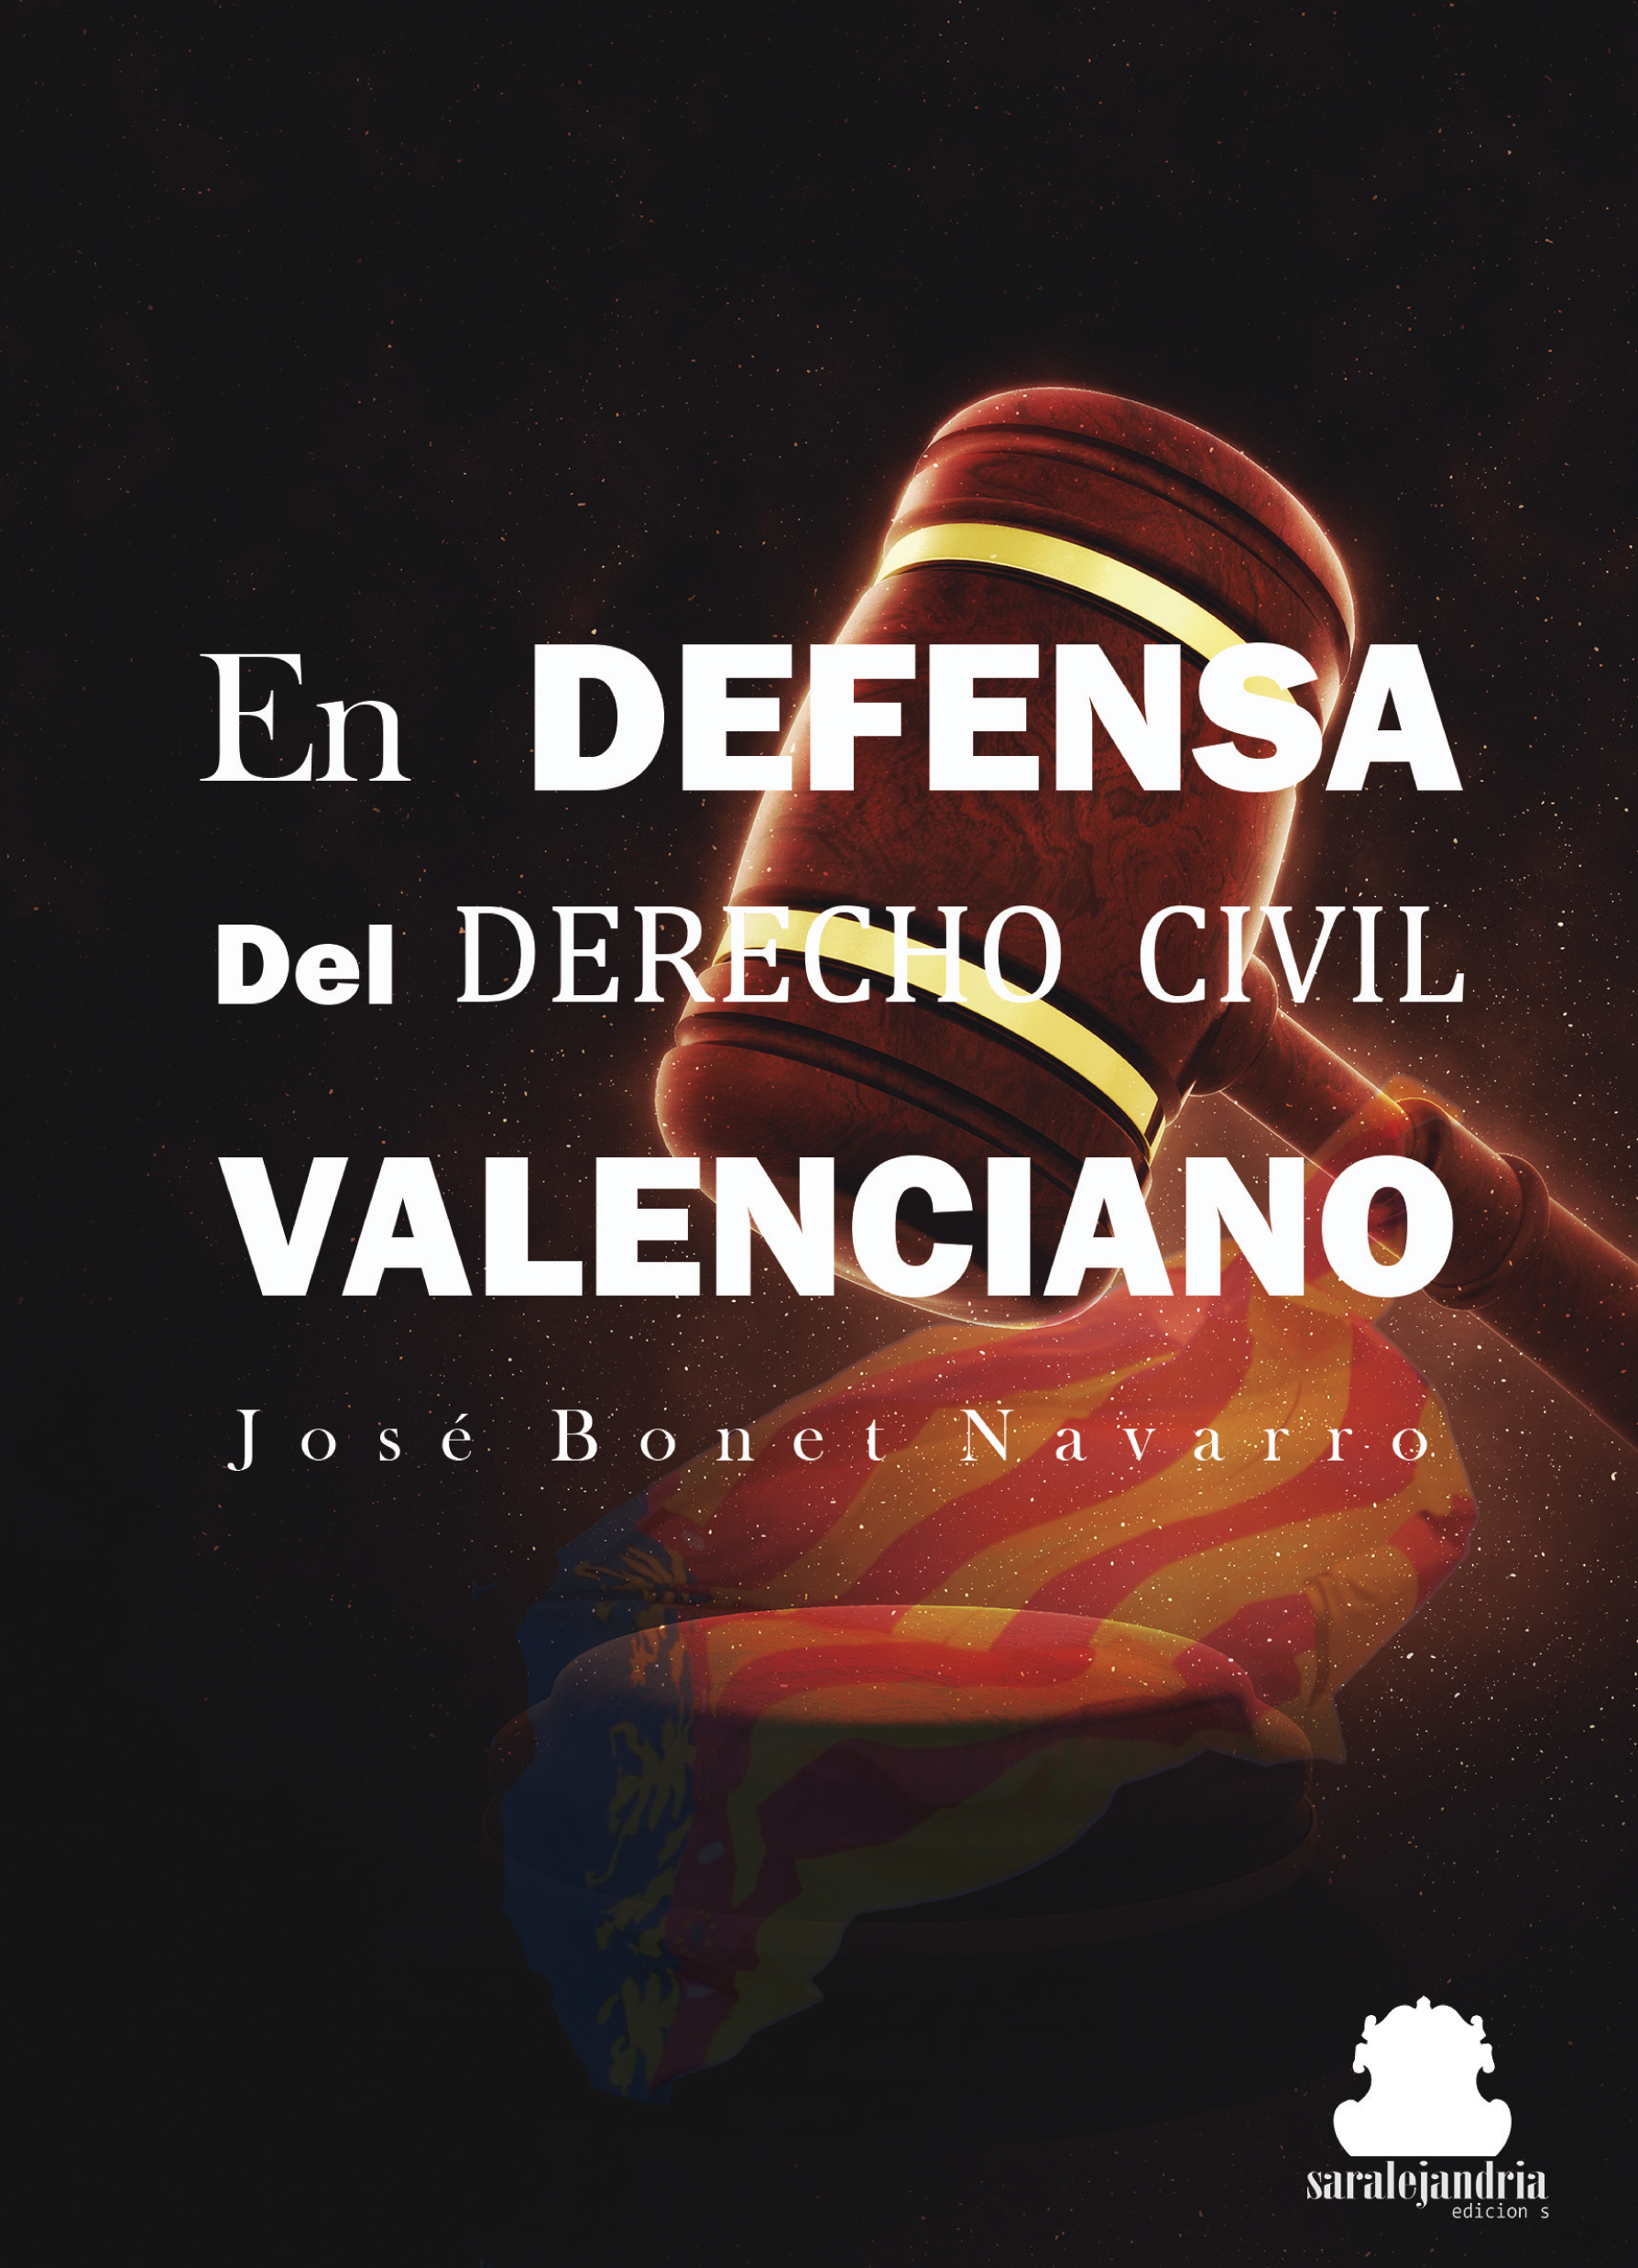 En defensa del derecho civil Valenciano